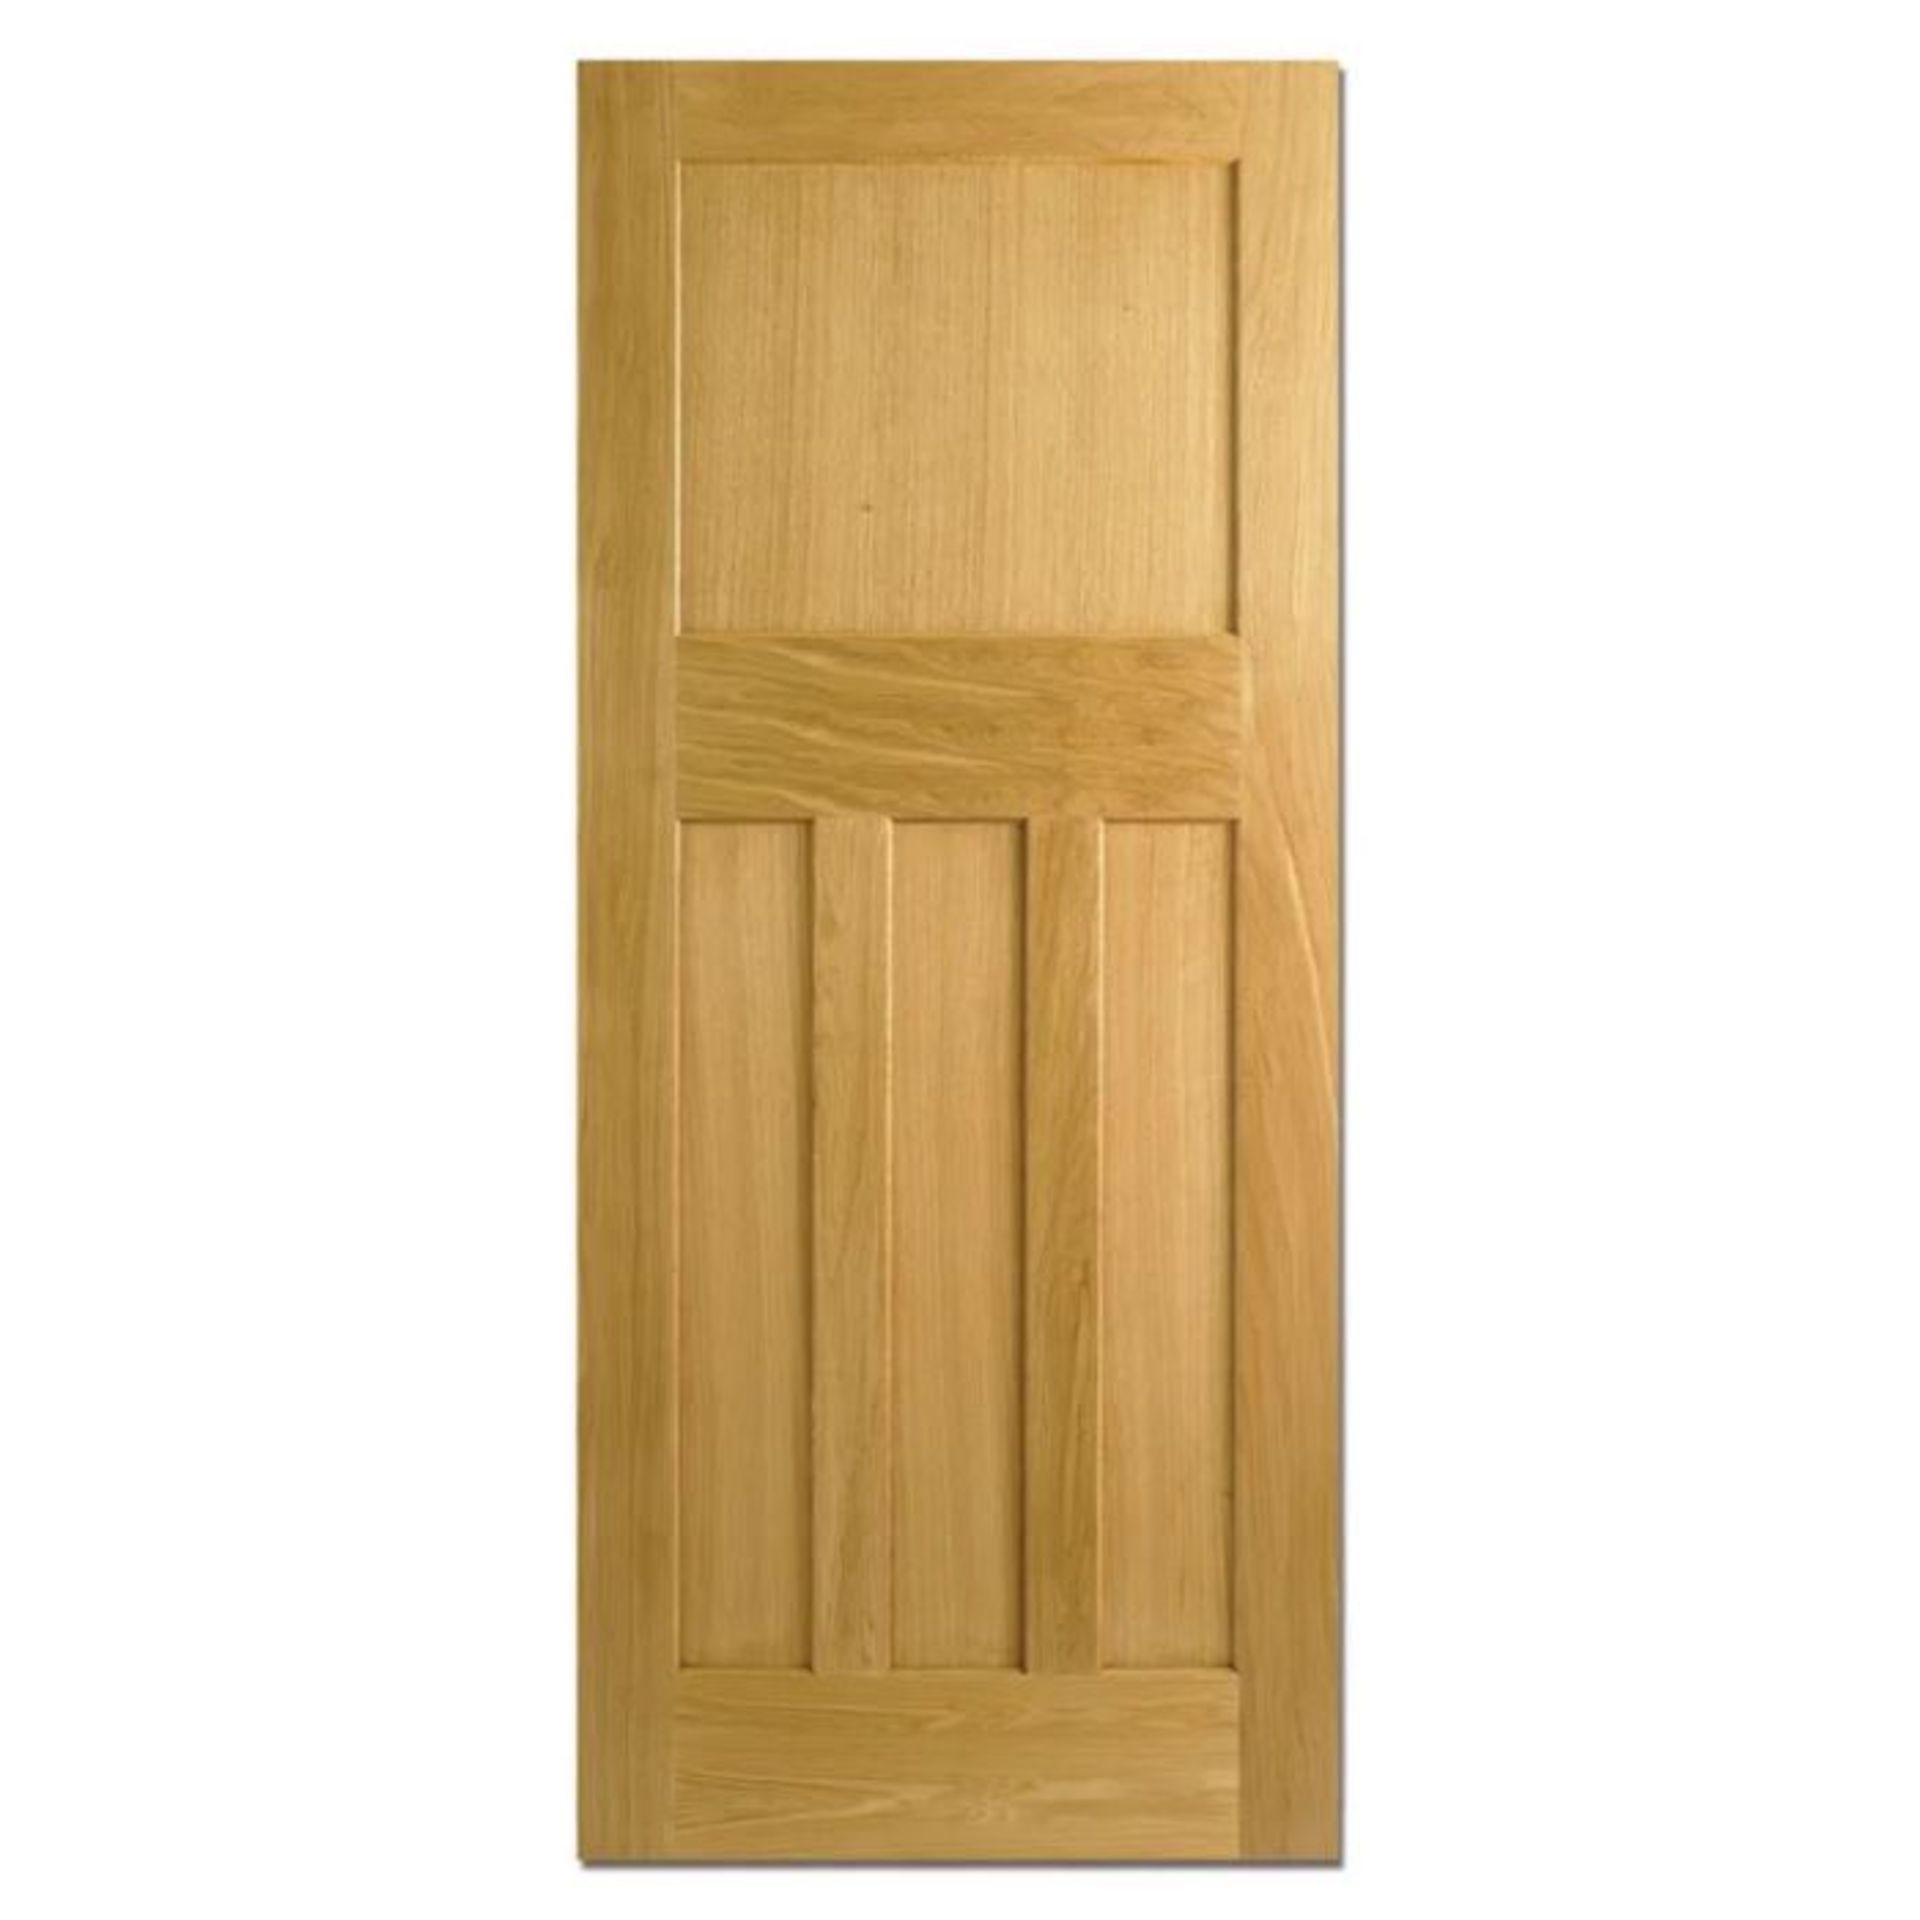 LPD Doors ,Nostalgia Veneer Internal Door Unfinished (APPROX 198 x 84cm) (BOXED, RETURN, NOT